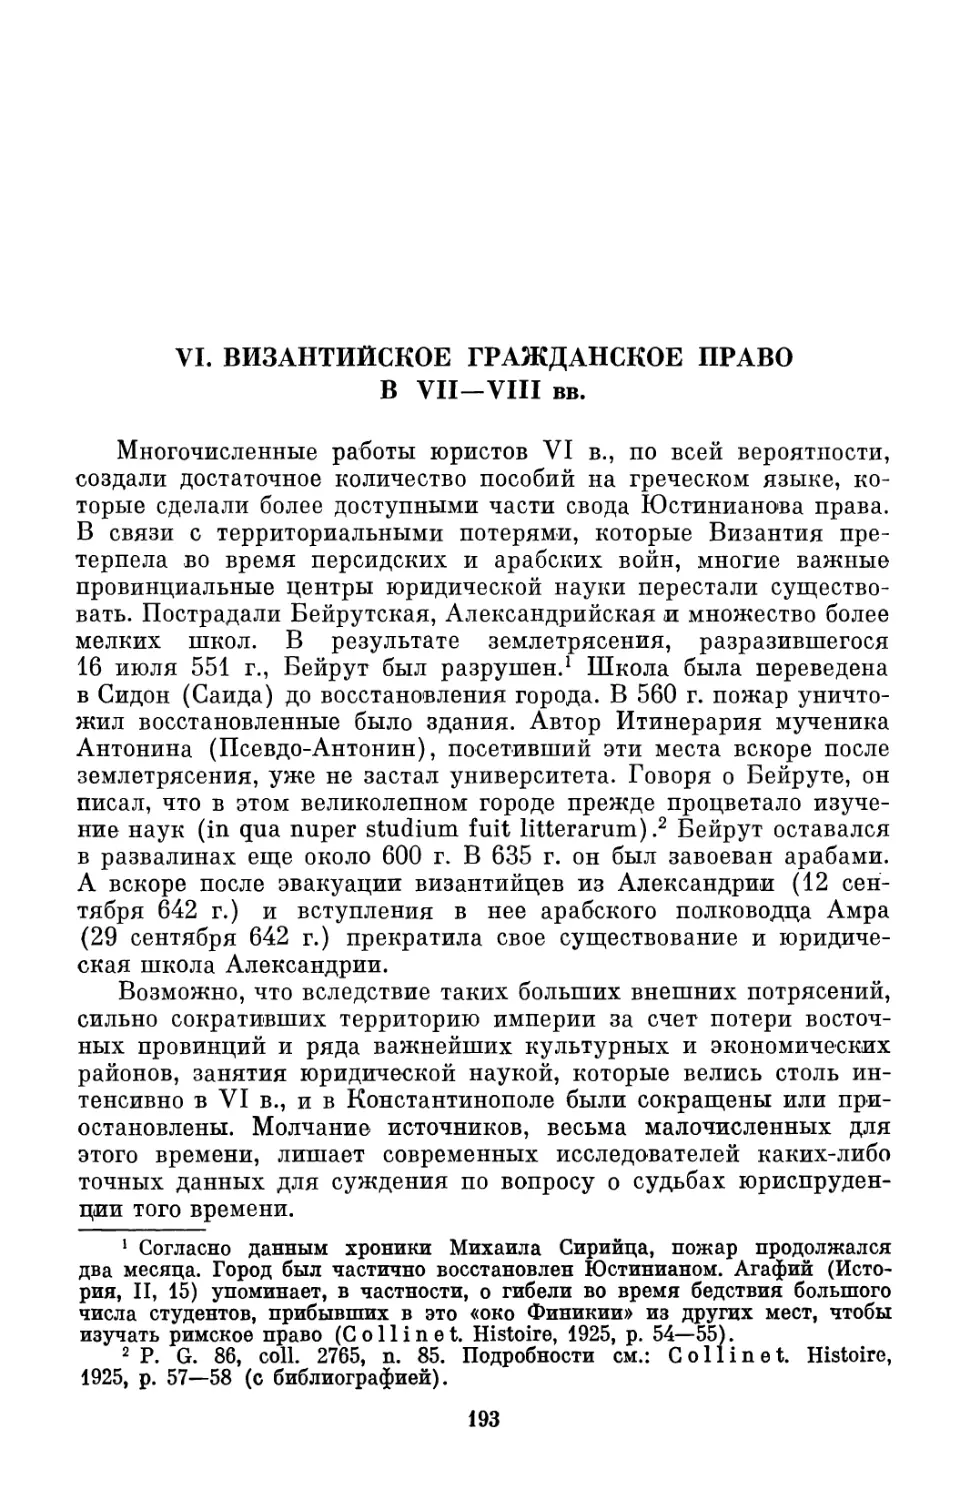 VI. Византийское гражданское право в VII—VIII вв